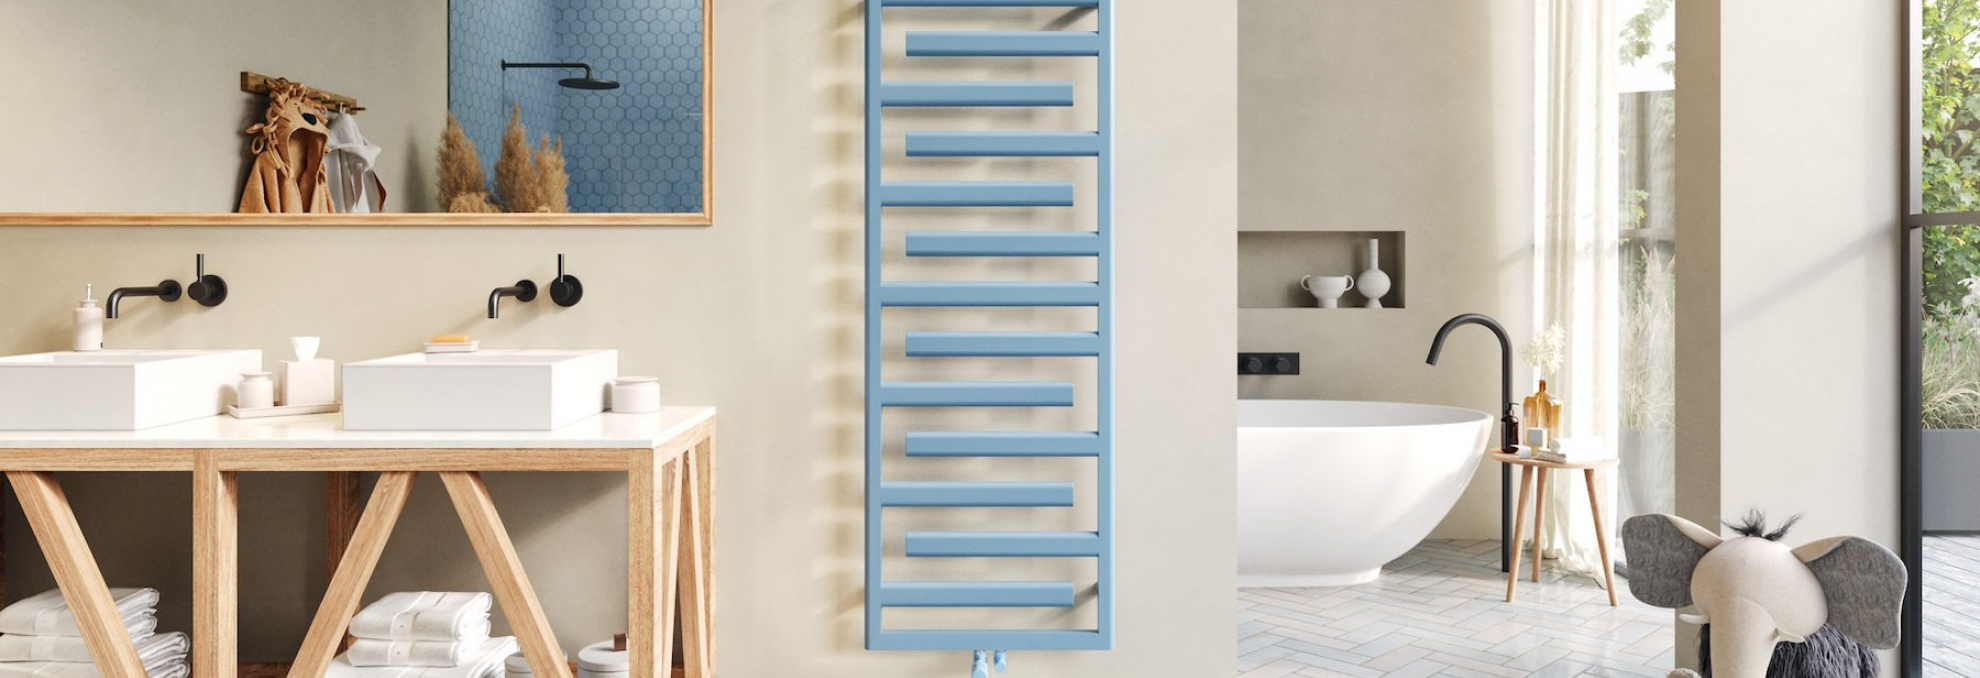 Designový radiátor Zehnder Tetris v moderní koupelně